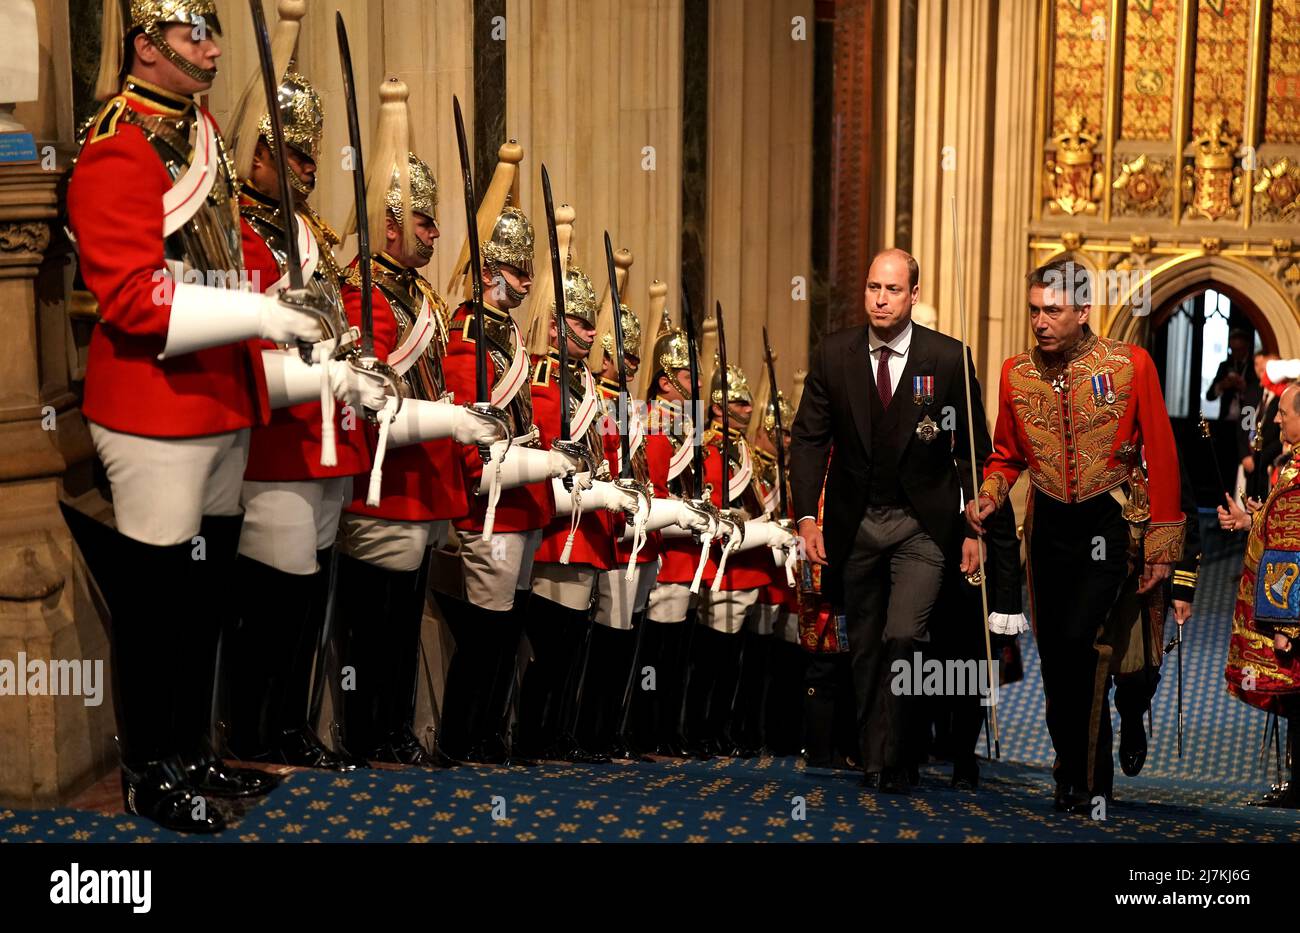 Prinz William geht vor der Eröffnung des Parlaments im House of Lords, London, an der Household Cavalry in der normannischen Veranda am Palace of Westminster vorbei. Bilddatum: Dienstag, 10. Mai 2022. Stockfoto